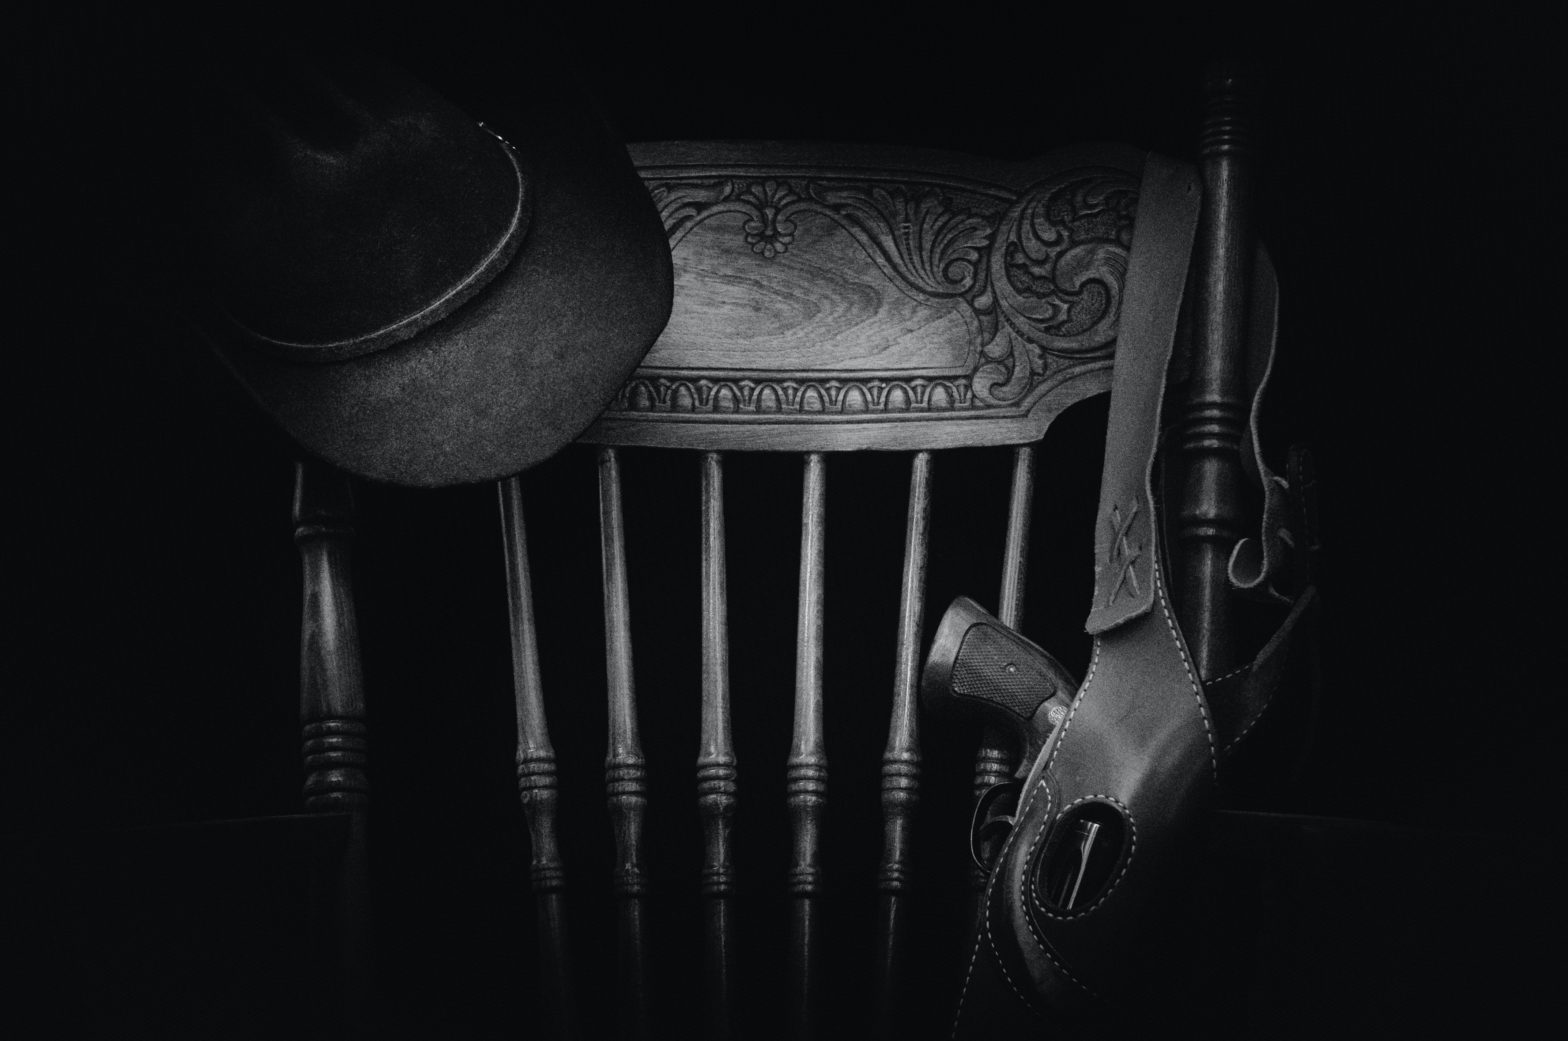 Krzesło, na którym zawieszony jest kapelusz i kabura z rewolwerem.